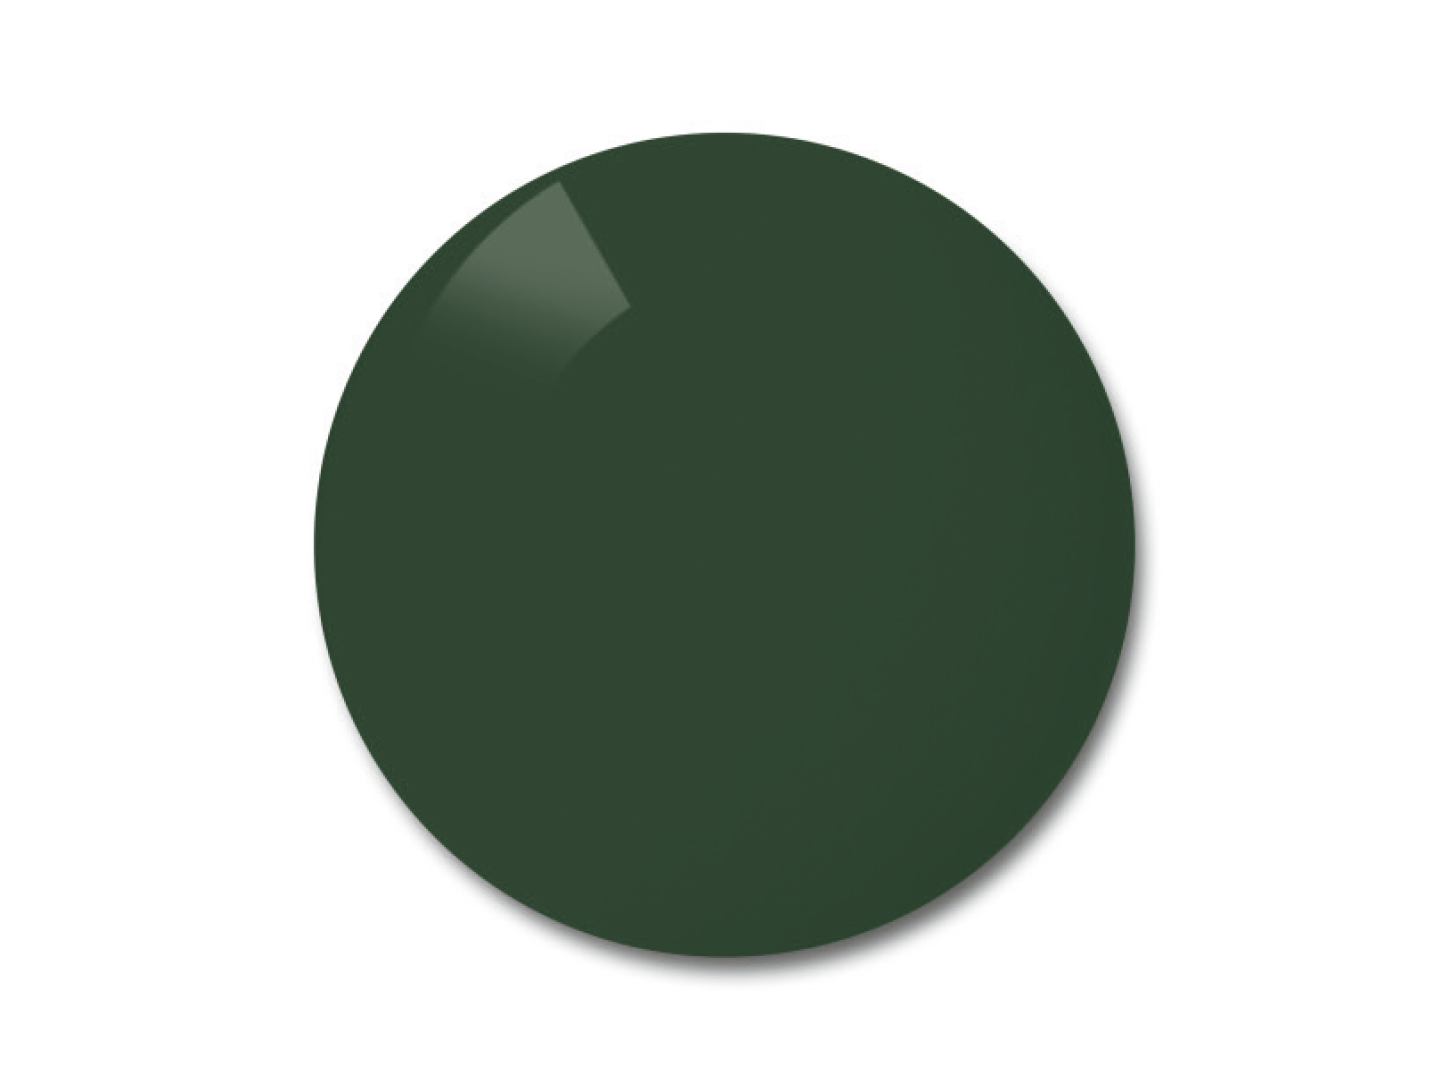 Kleurvoorbeeld voor de pioneer (grijs-groen) gepolariseerde brillenglazen.